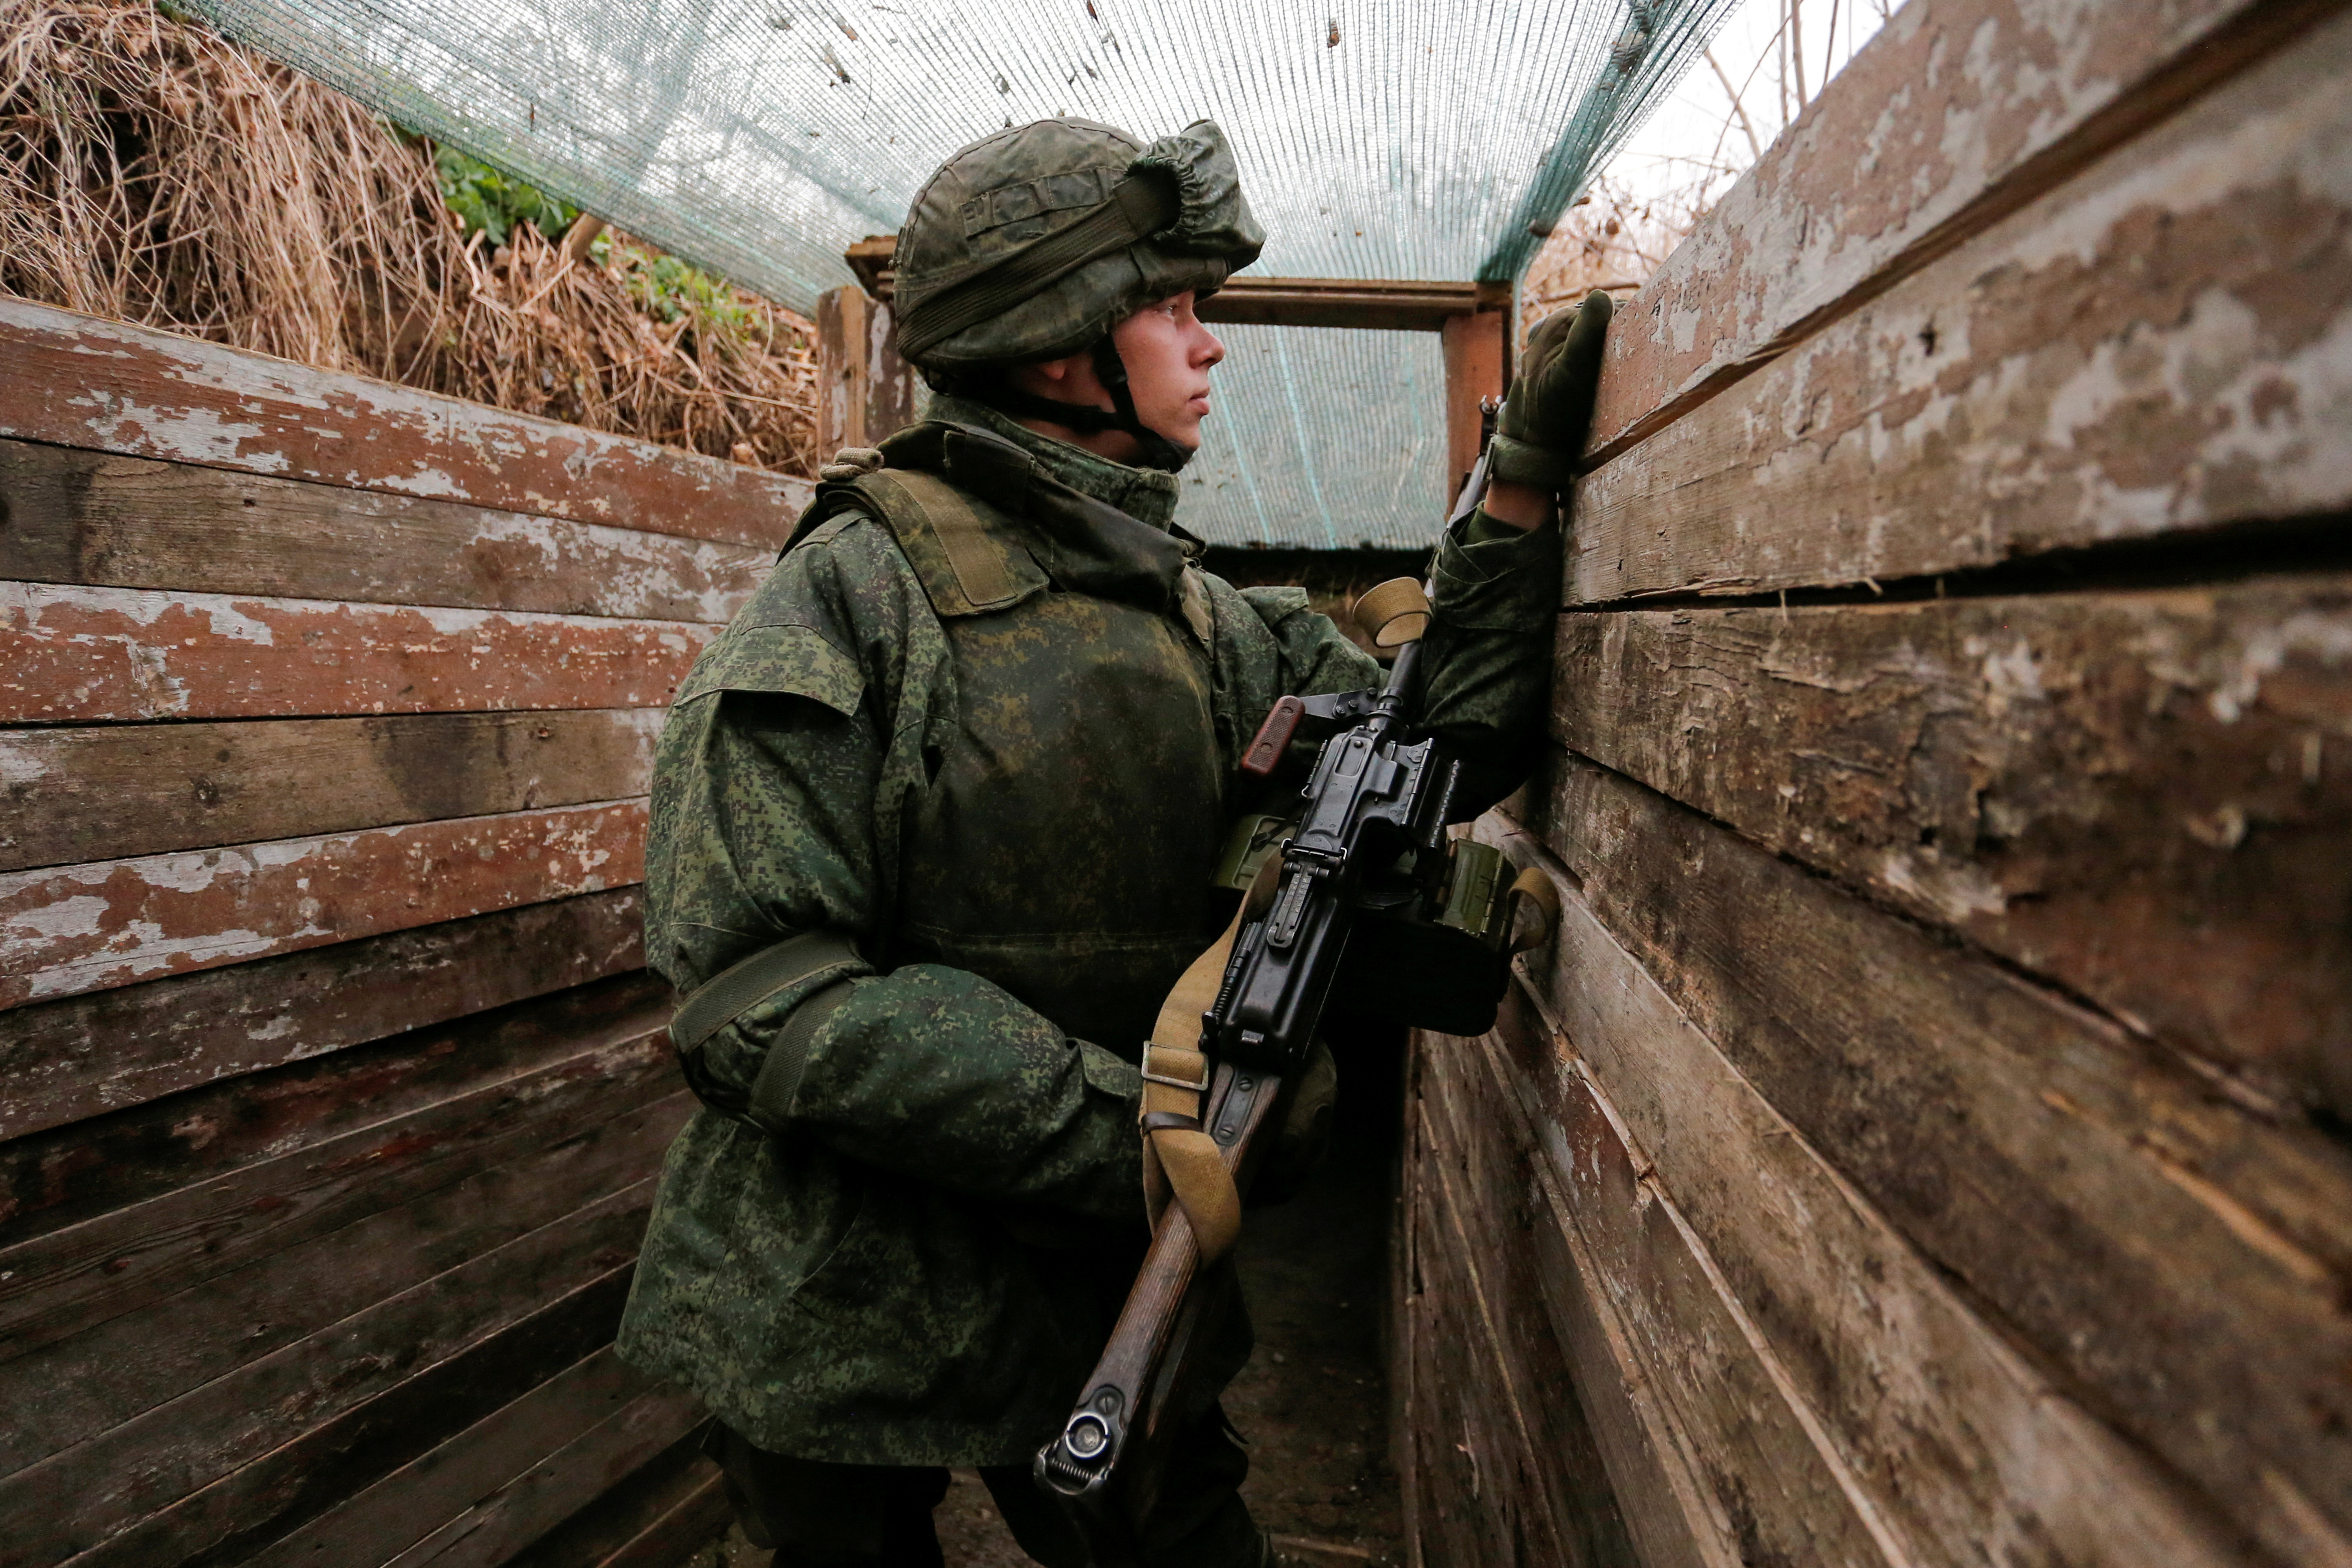 Una acción militar no se ve lejos desde Donbass, en las fronteras de Ucrania. La tensión se incrementa luego de la advertencia de la OTAN de haber puesto las fuerzas aliadas en "estado de alerta".